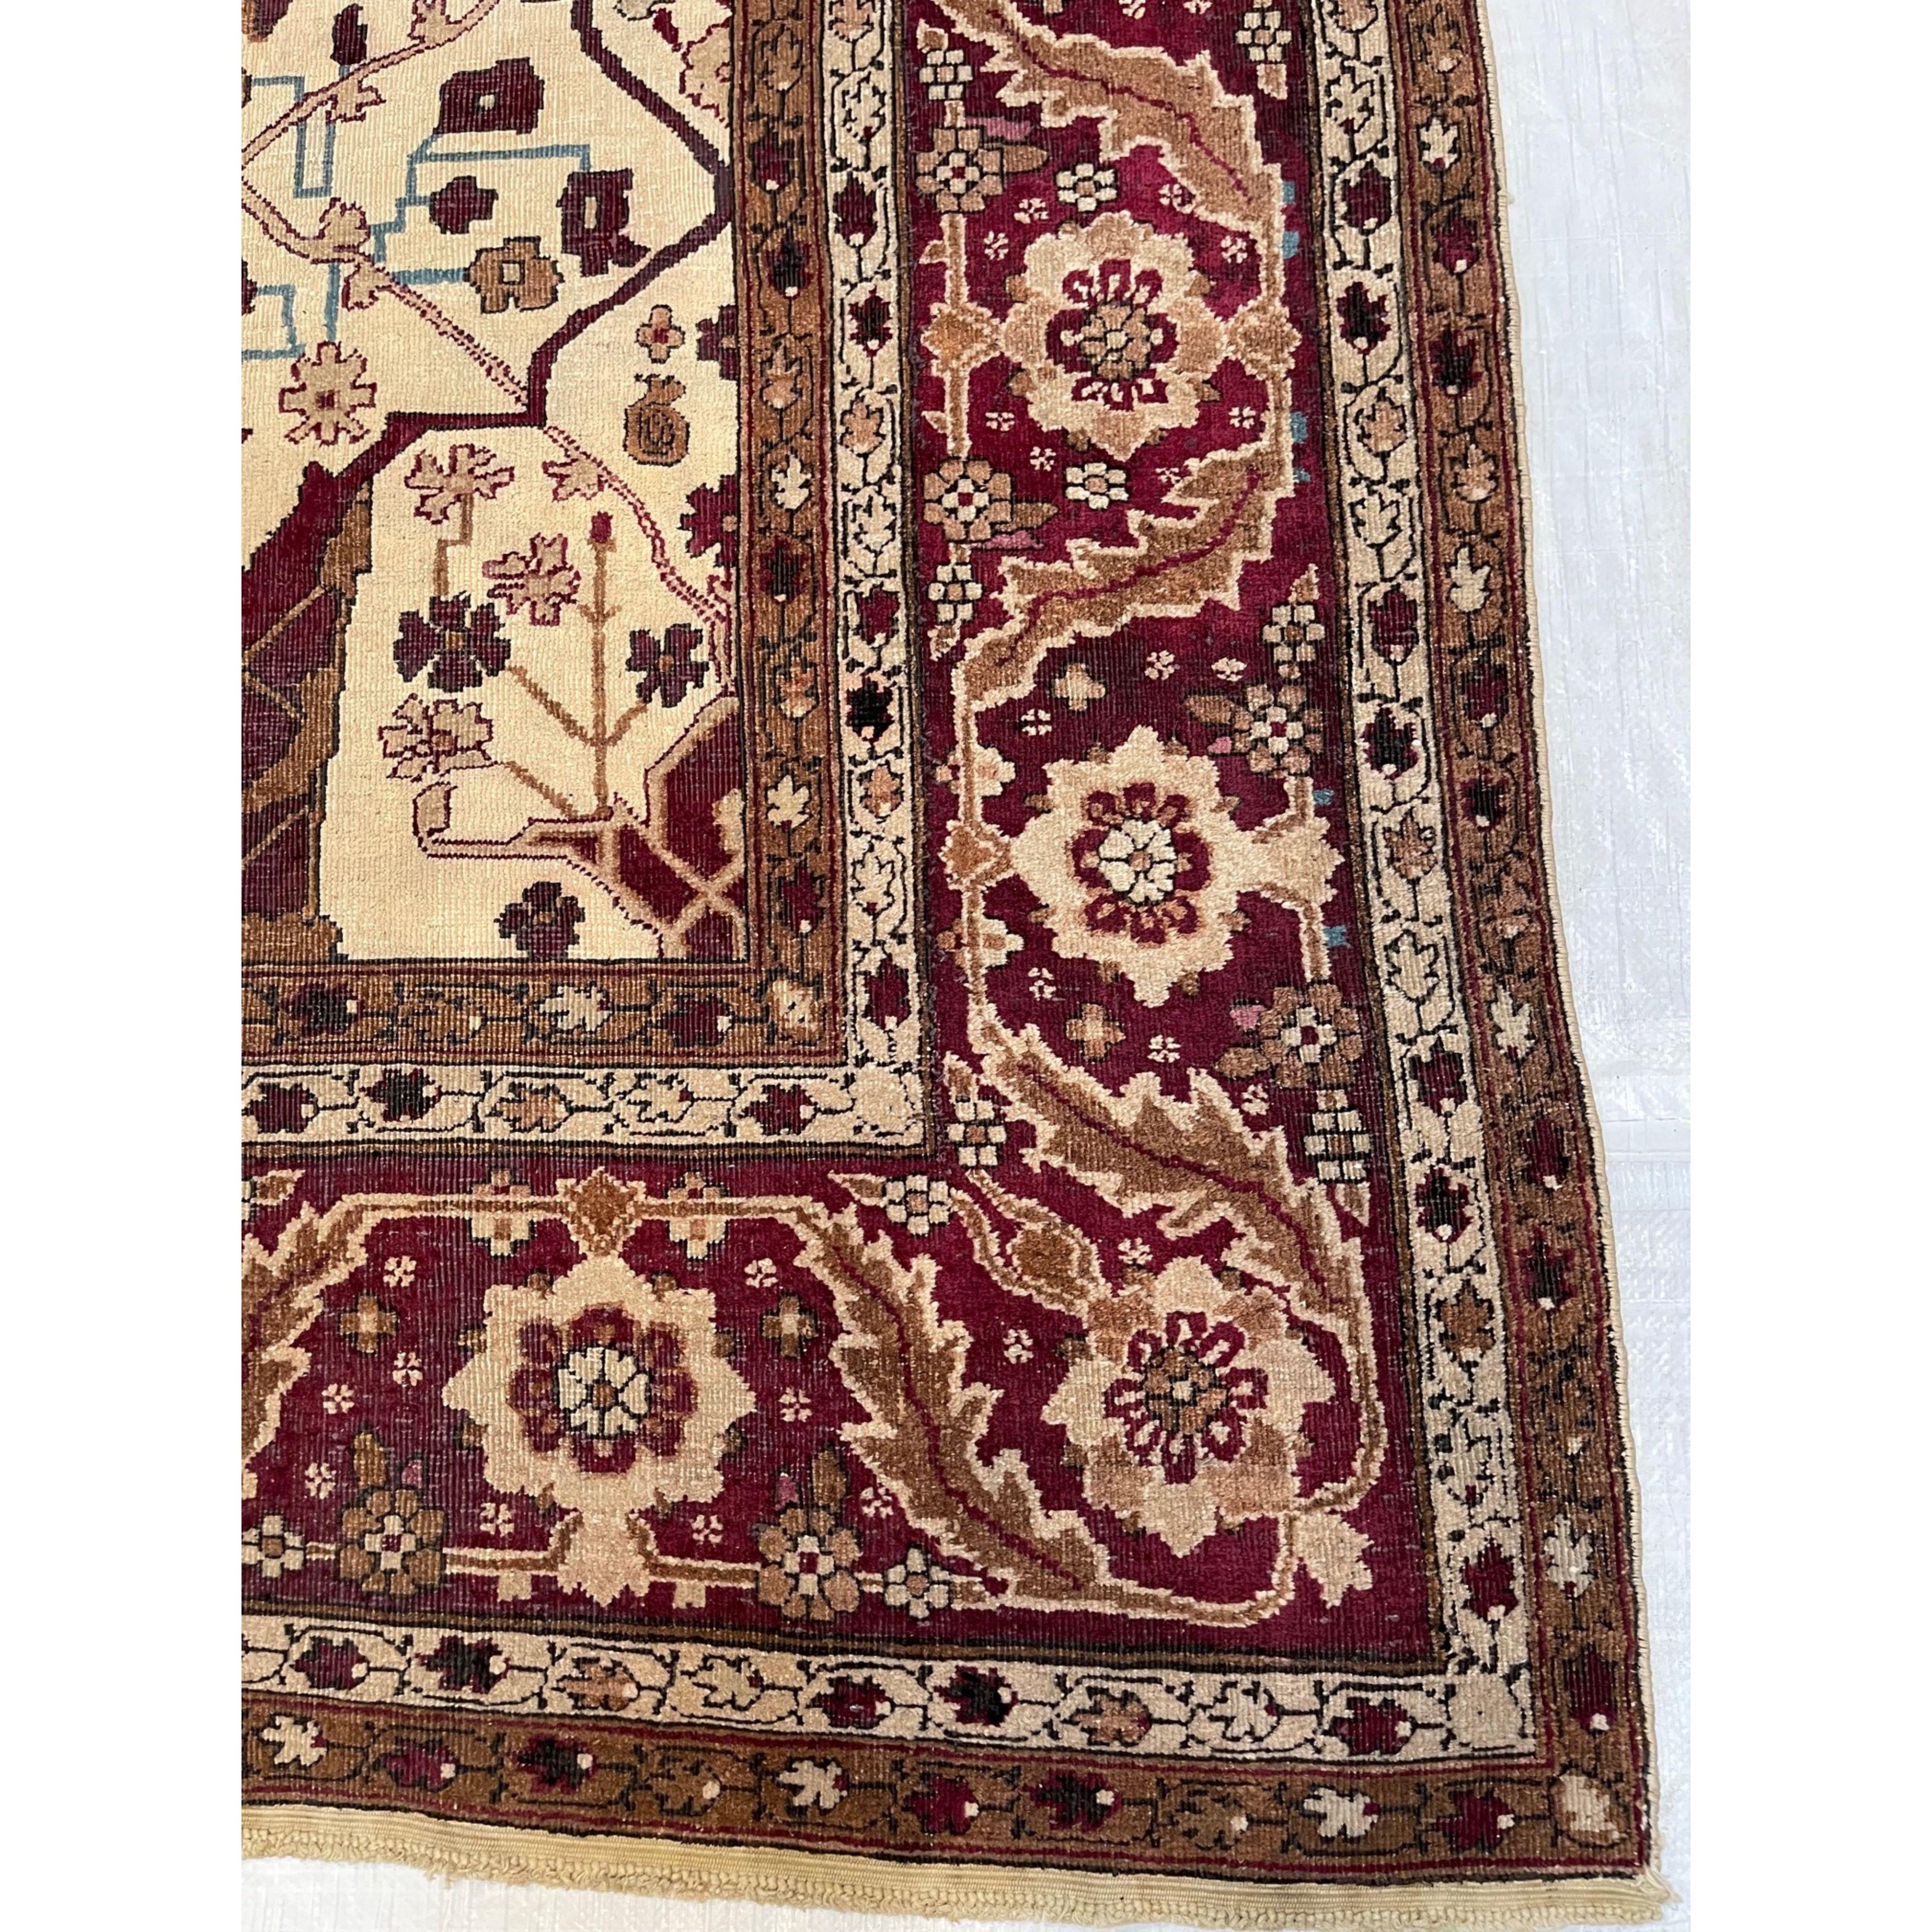 Tapis anciens d'Agra Agra est un centre important de production de tapis depuis la grande période de l'art moghol aux XVIe et XVIIe siècles. Lorsque l'industrie du tapis a été relancée sous la domination britannique au XIXe siècle, la grande